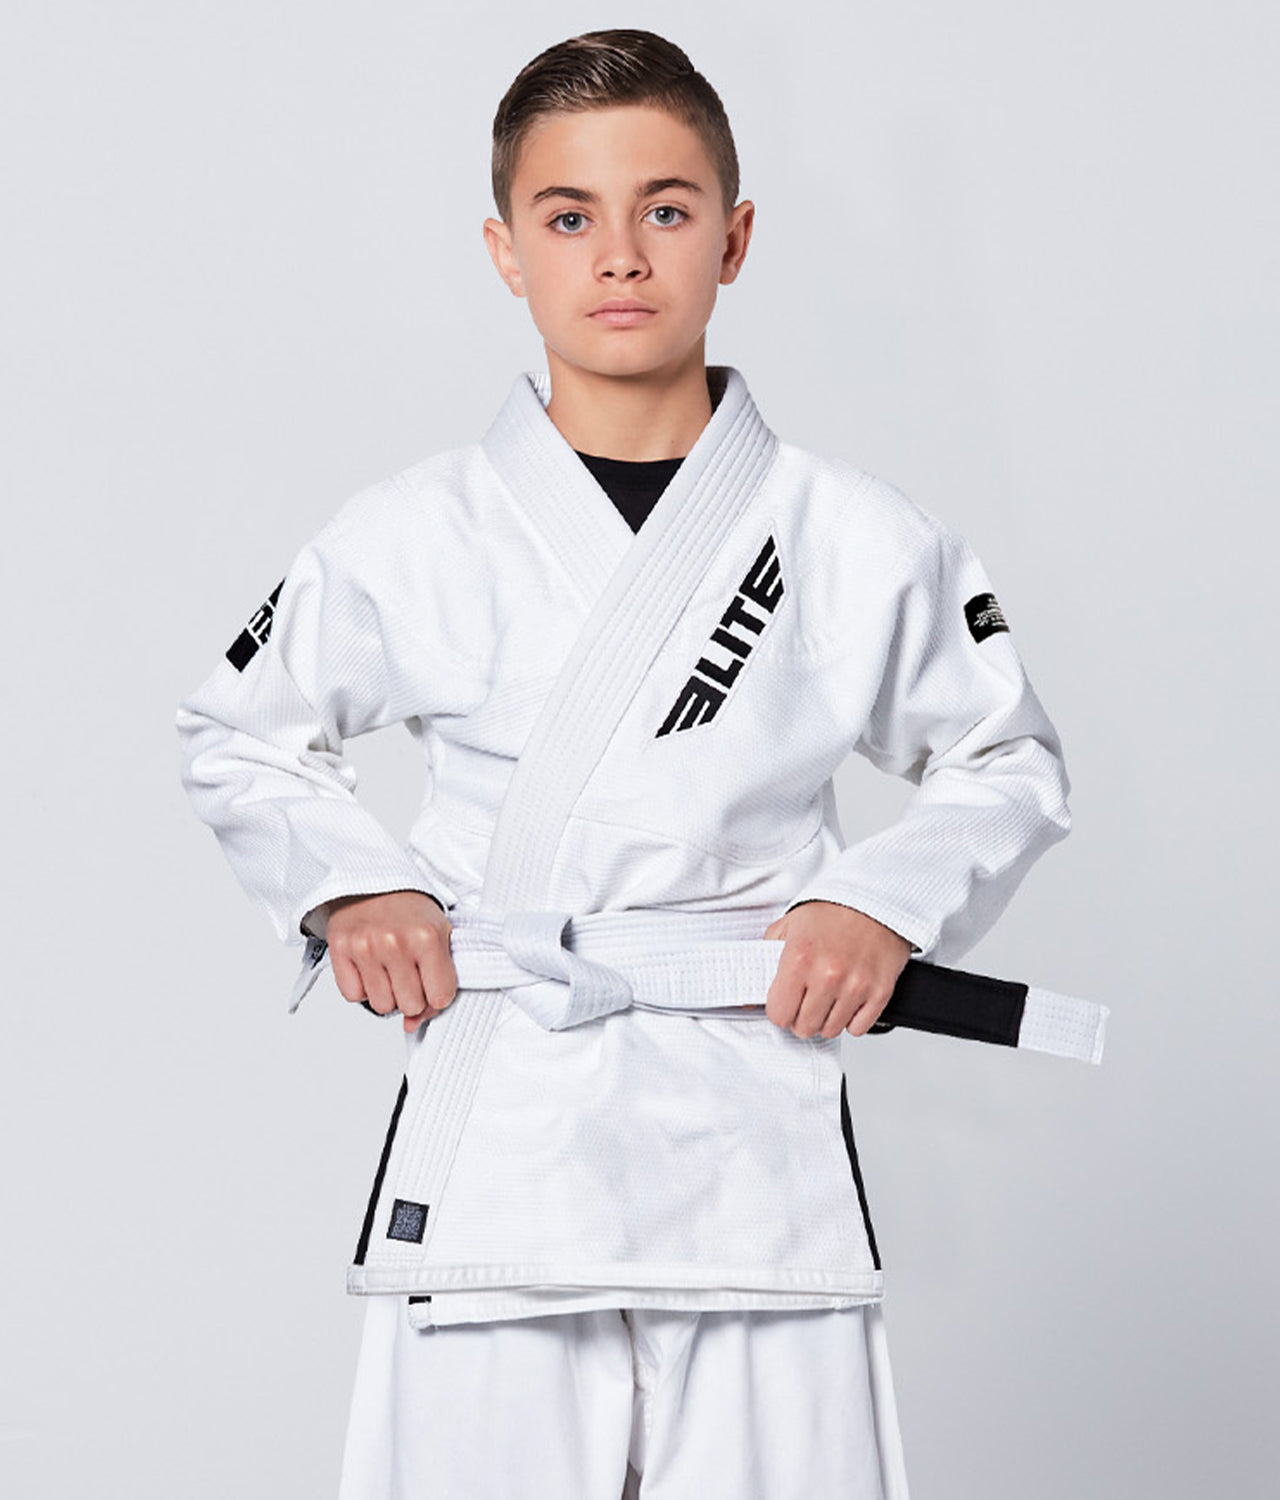 Elite Sports Kids' Core White Brazilian Jiu Jitsu BJJ Gi